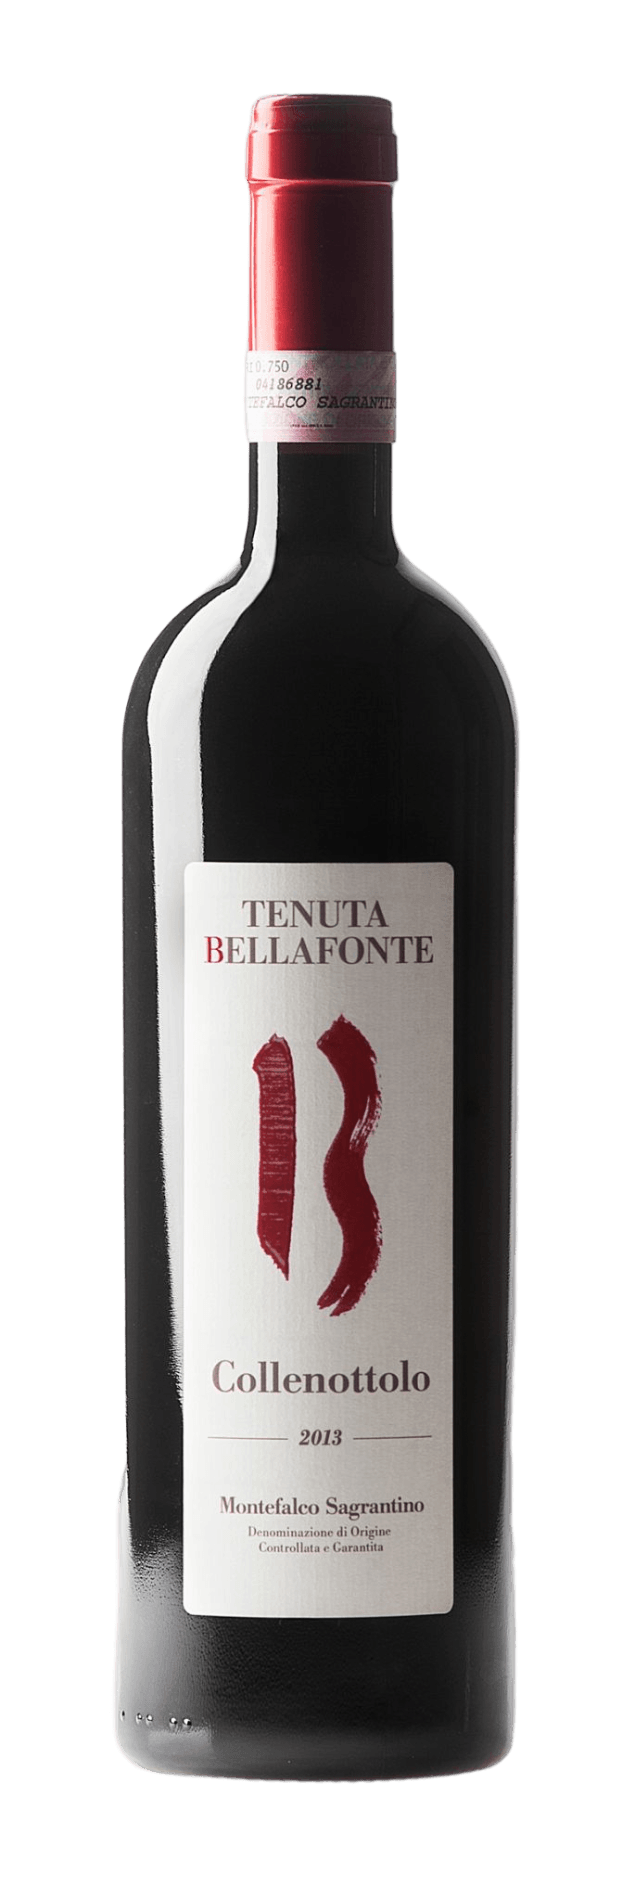 Collenottolo 2013 - Tenuta Bellafonte